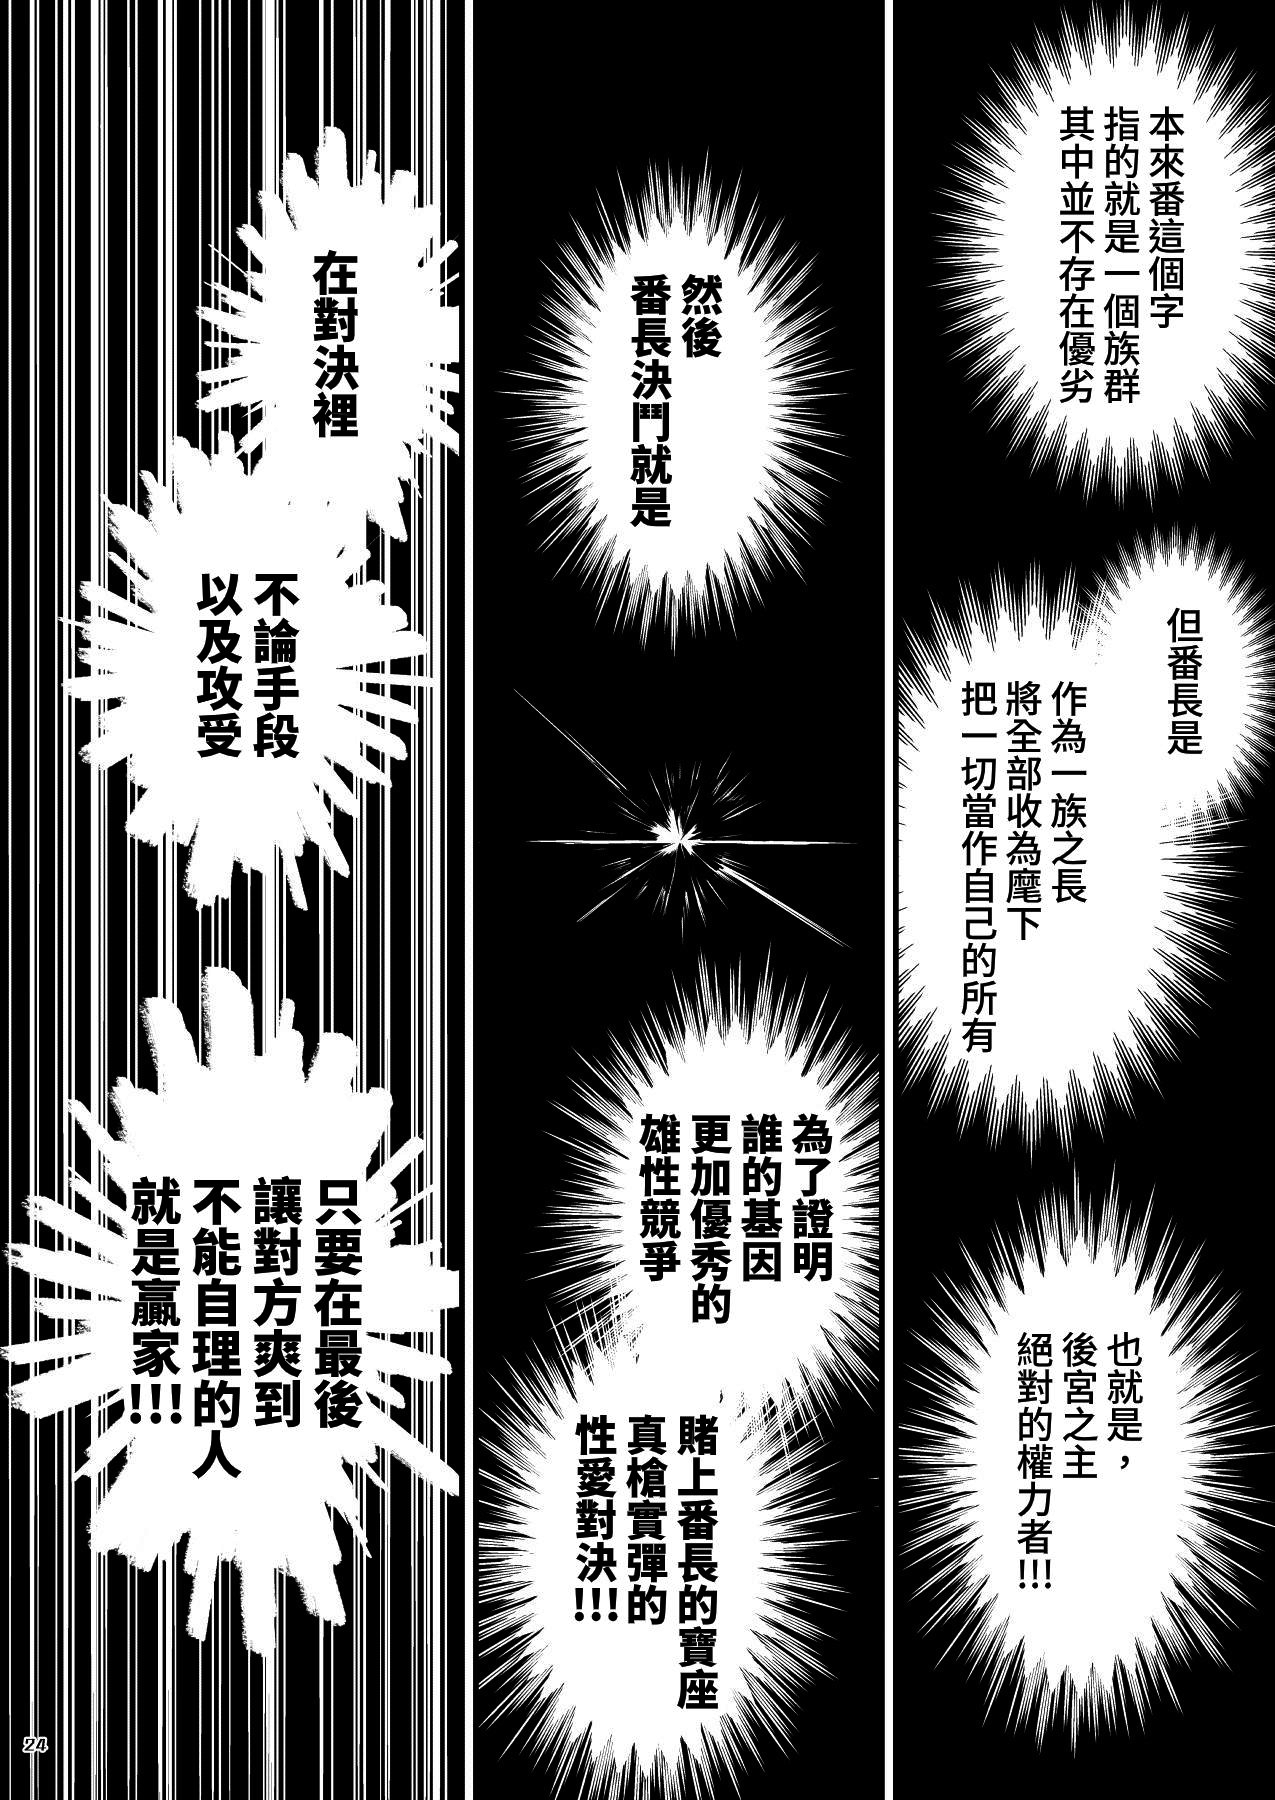 Itokazu ITKZ Sei i Daishougun 性威大将軍 Banchou★Monogatari 番長★物語 3